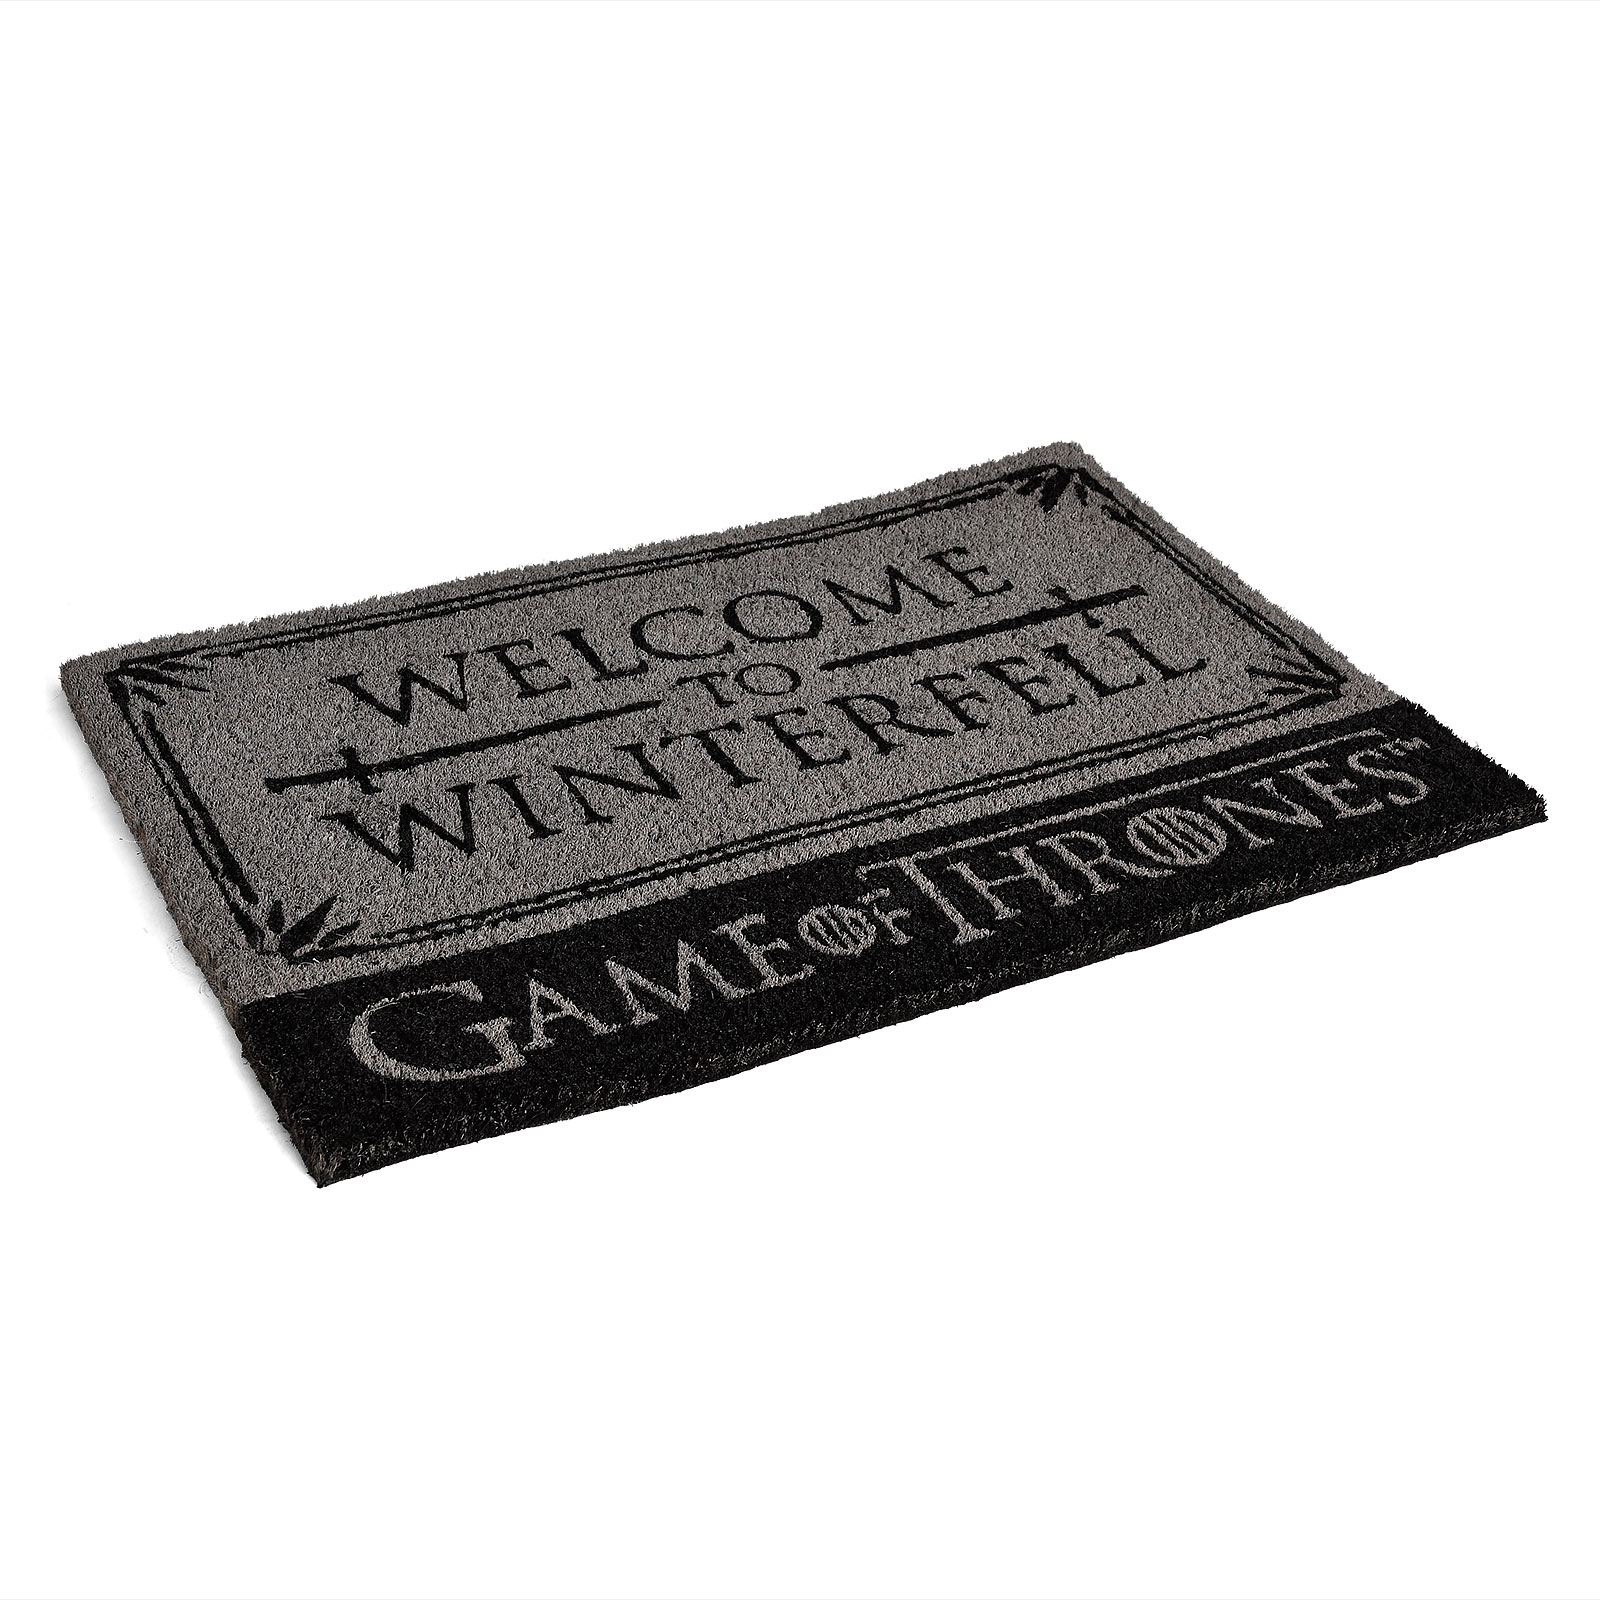 Game of Thrones - Stark Welcome to Winterfell Doormat